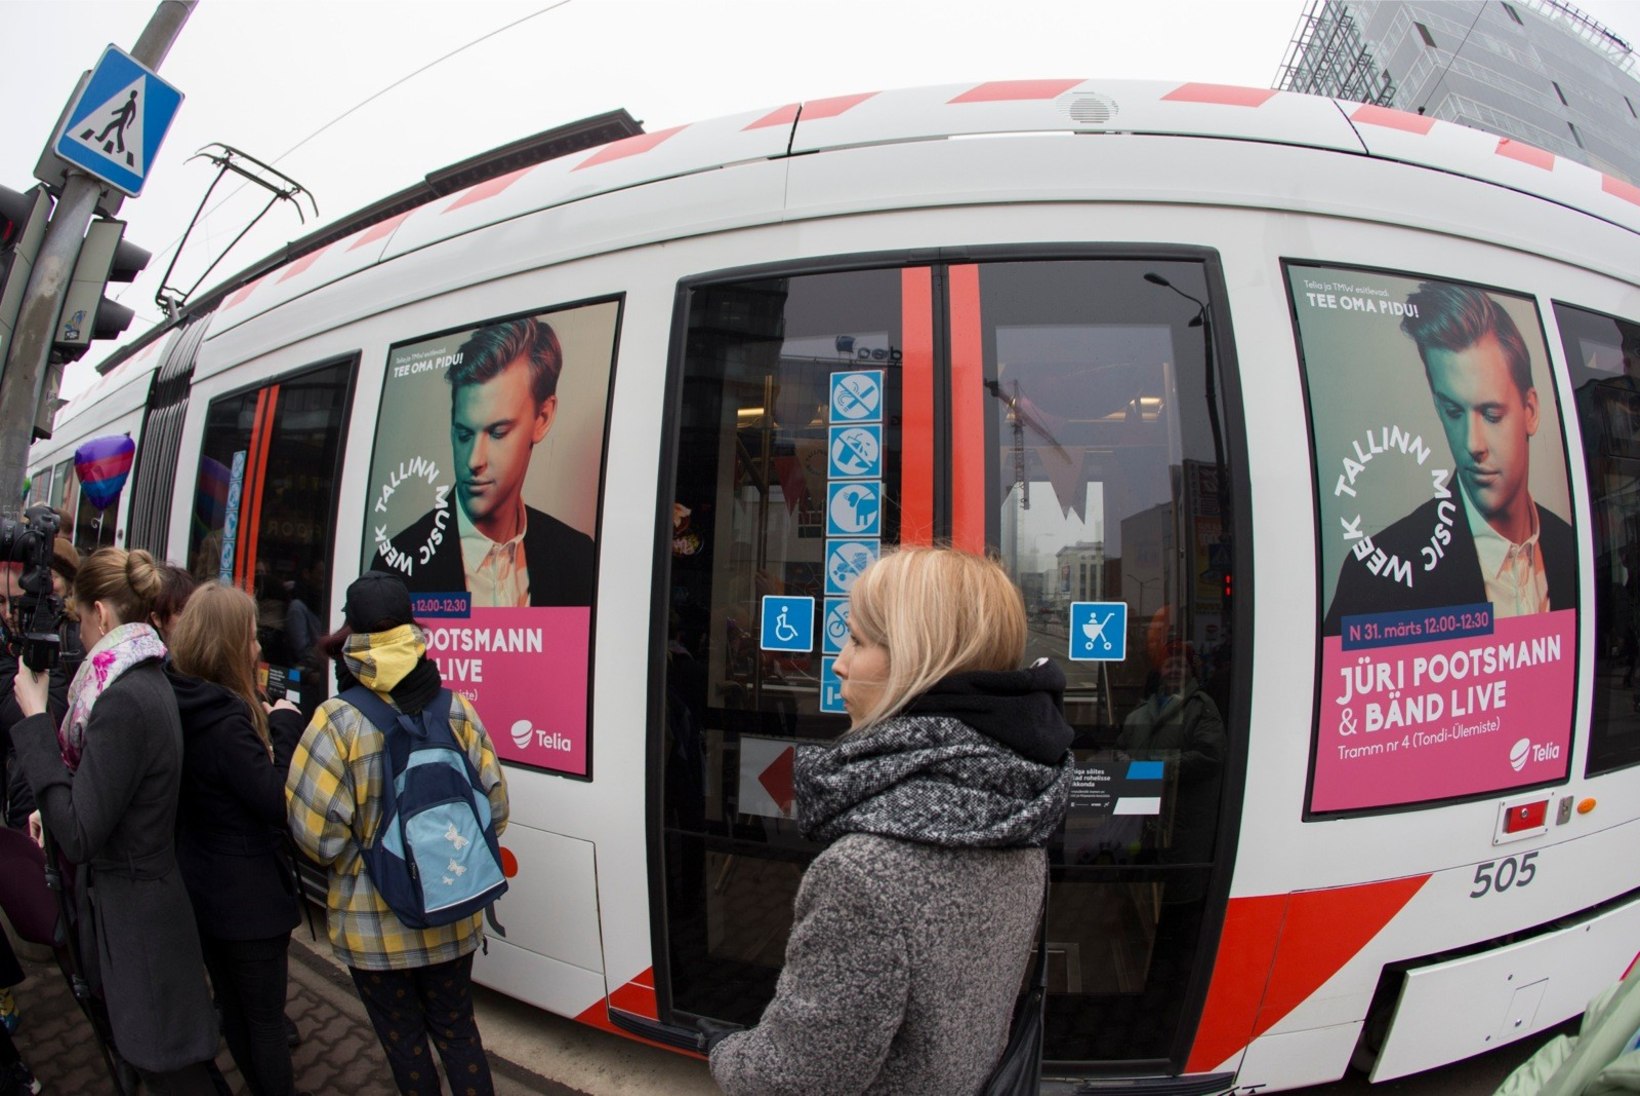 ÕHTULEHE VIDEO JA GALERII | Jüri Pootsmann andis trammis kontserdi: pidin meeles pidama, et kinni hoida